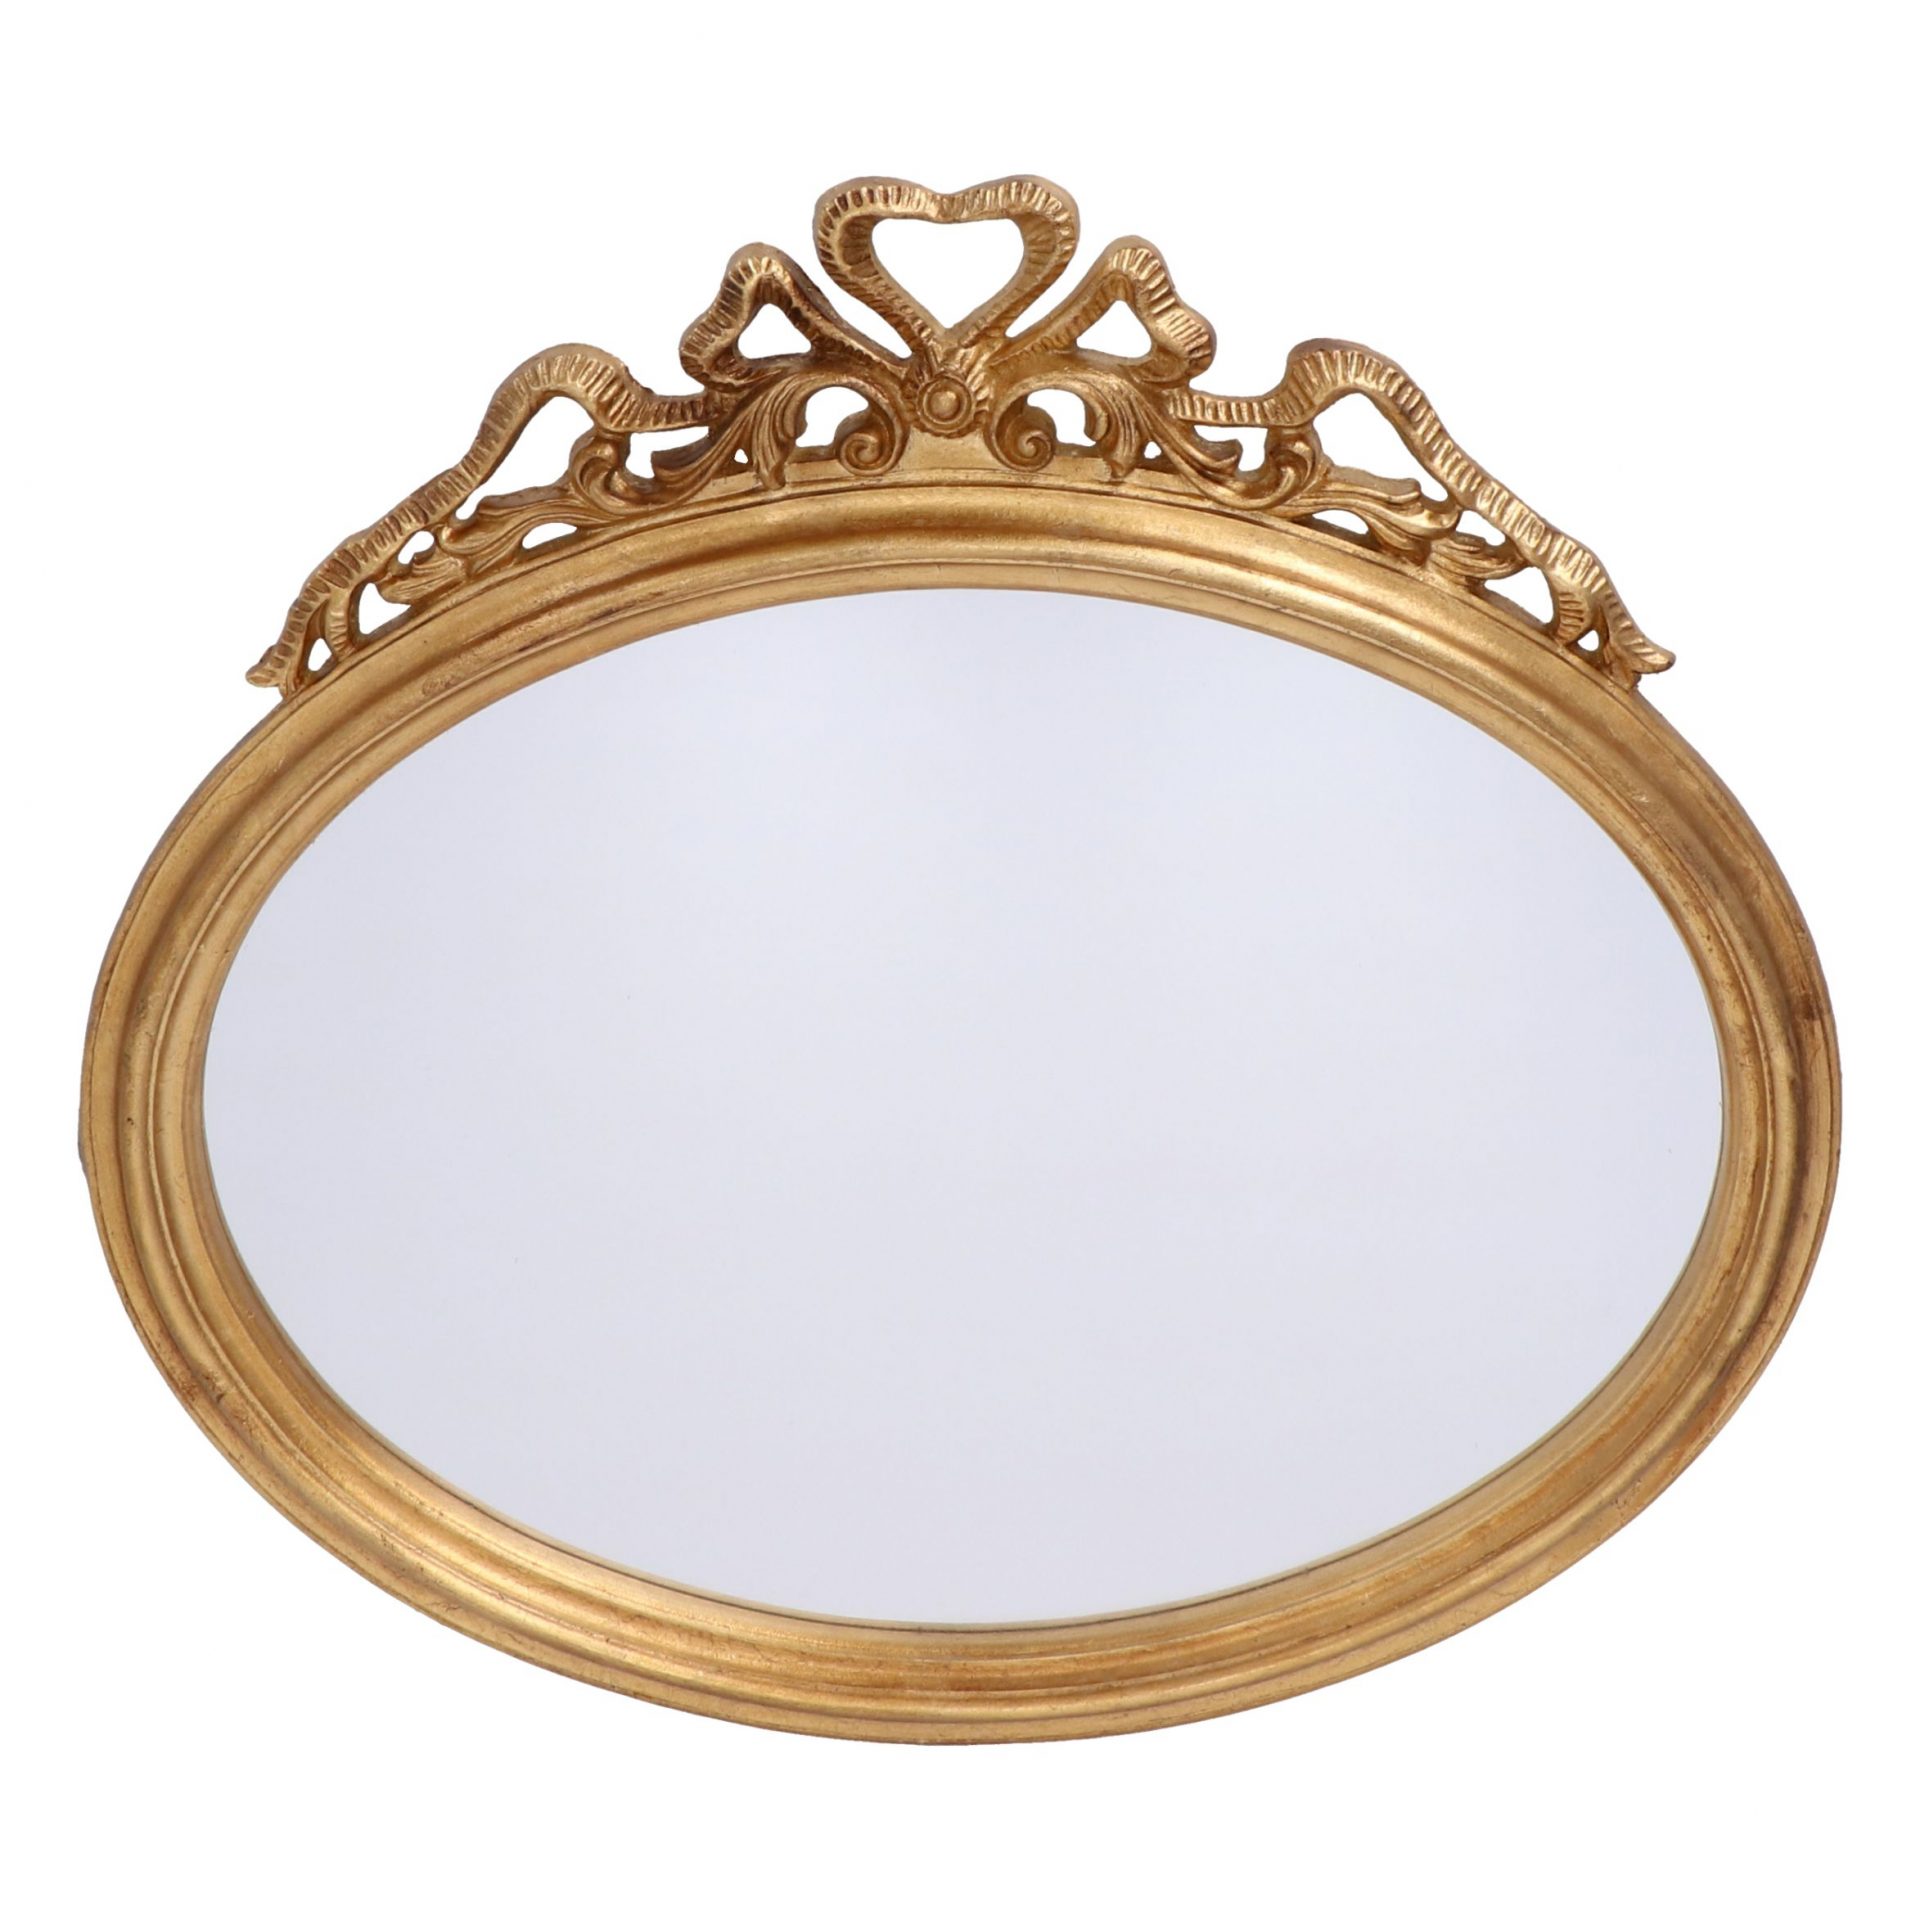 Specchiera ovale con fiocco oro